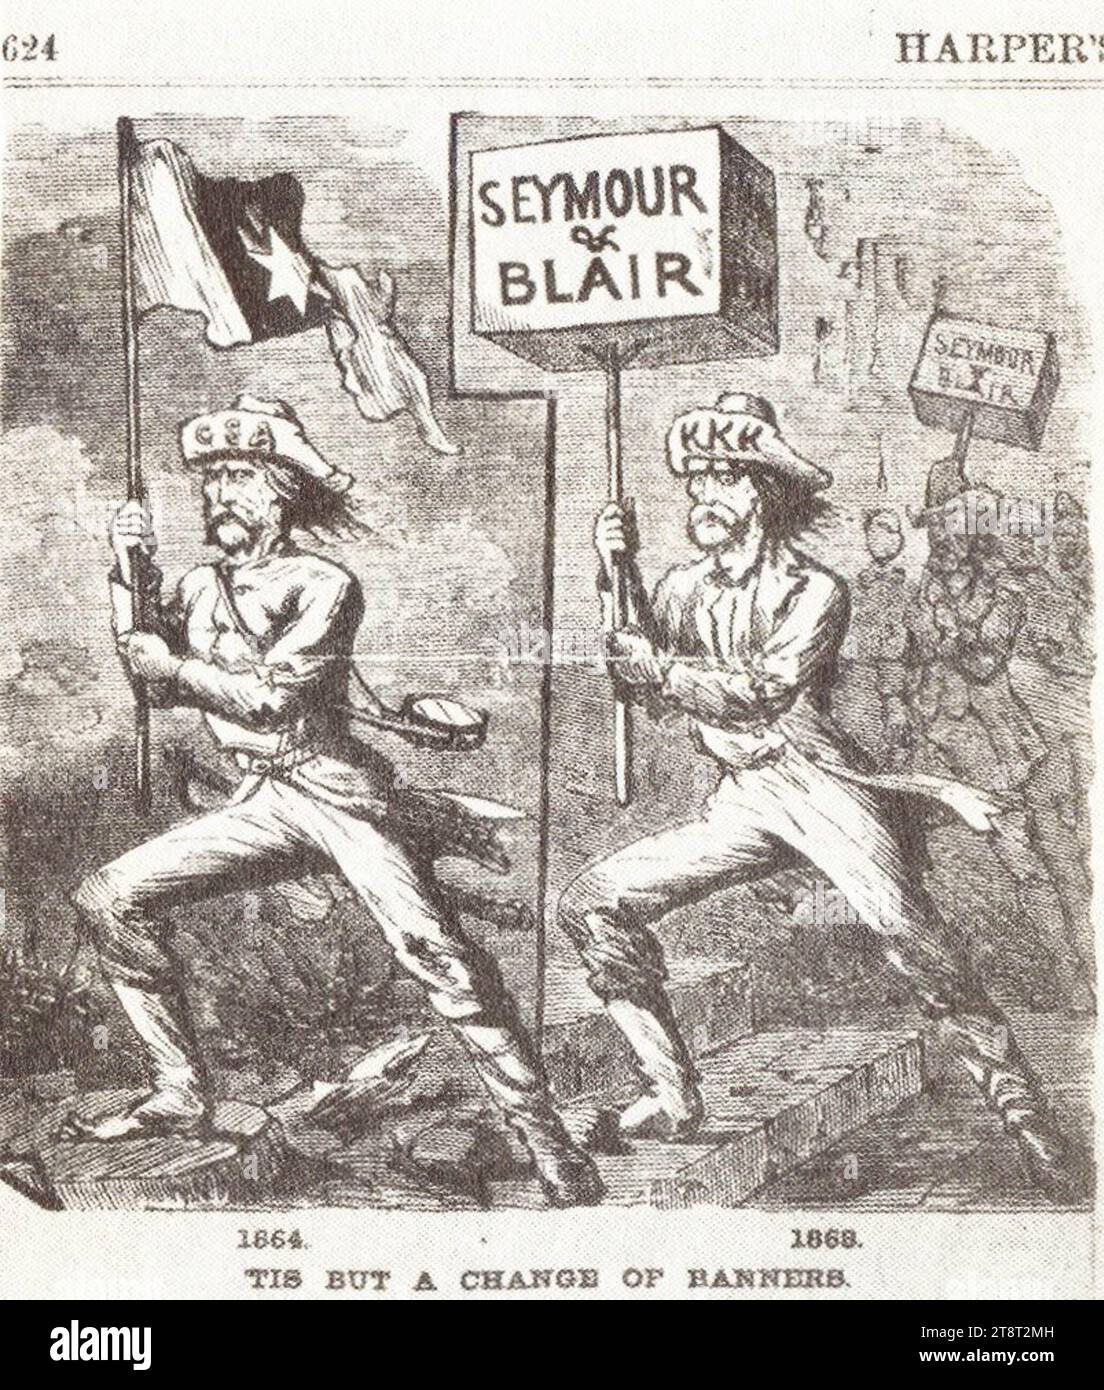 Cartone animato del 1868 ("Tis but a change in banner"), questo cartone animato di Frank Bellew è un esempio di "sventolare la camicia sanguinosa" - il tentativo repubblicano di collegare il partito democratico con la secessione e la causa confederata. Foto Stock